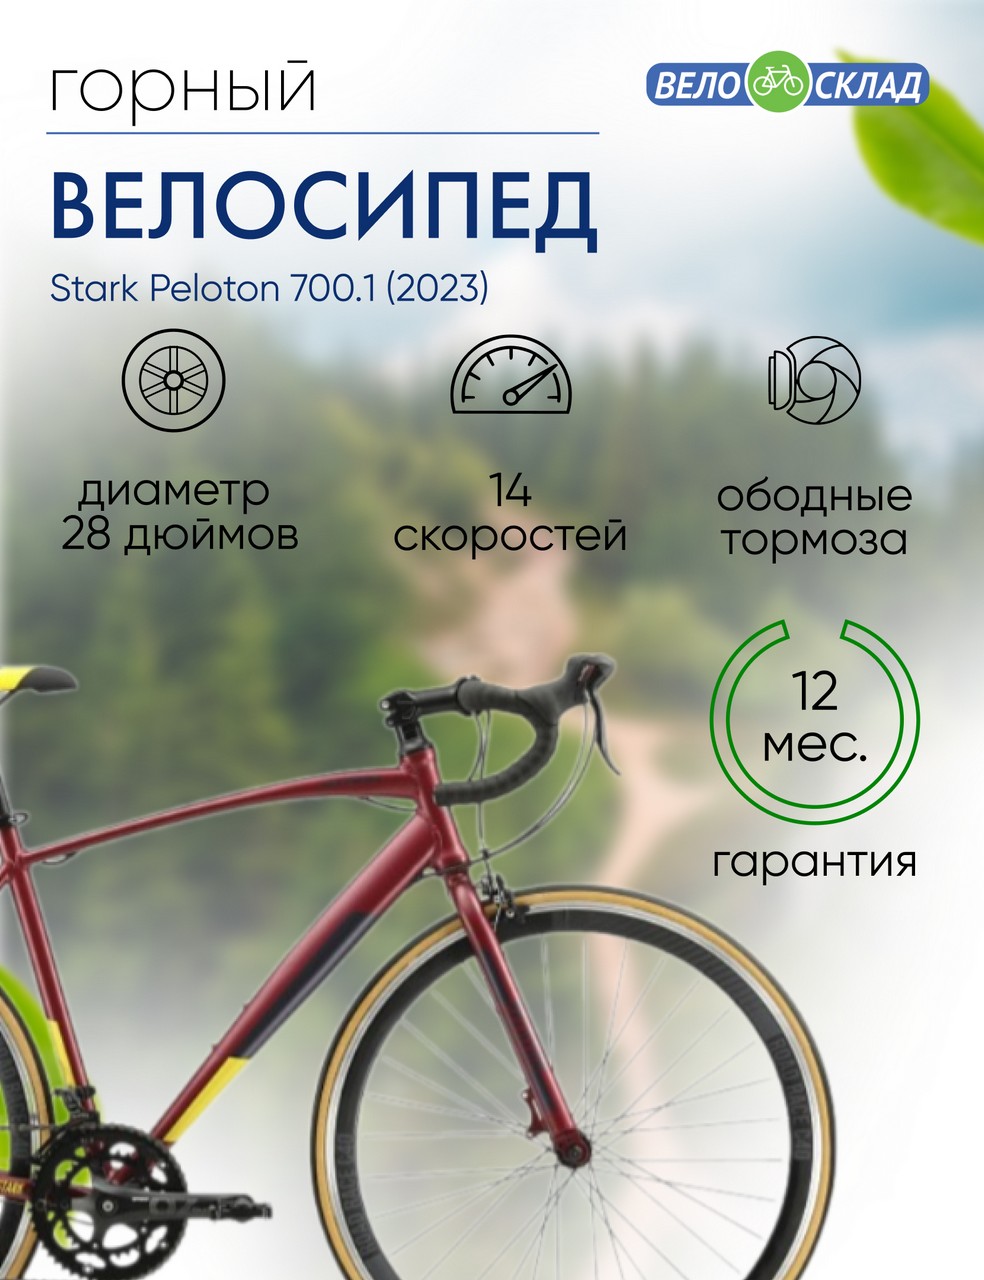 Шоссейный велосипед Stark Peloton 700.1, год 2023, цвет Красный-Серебристый, ростовка 20